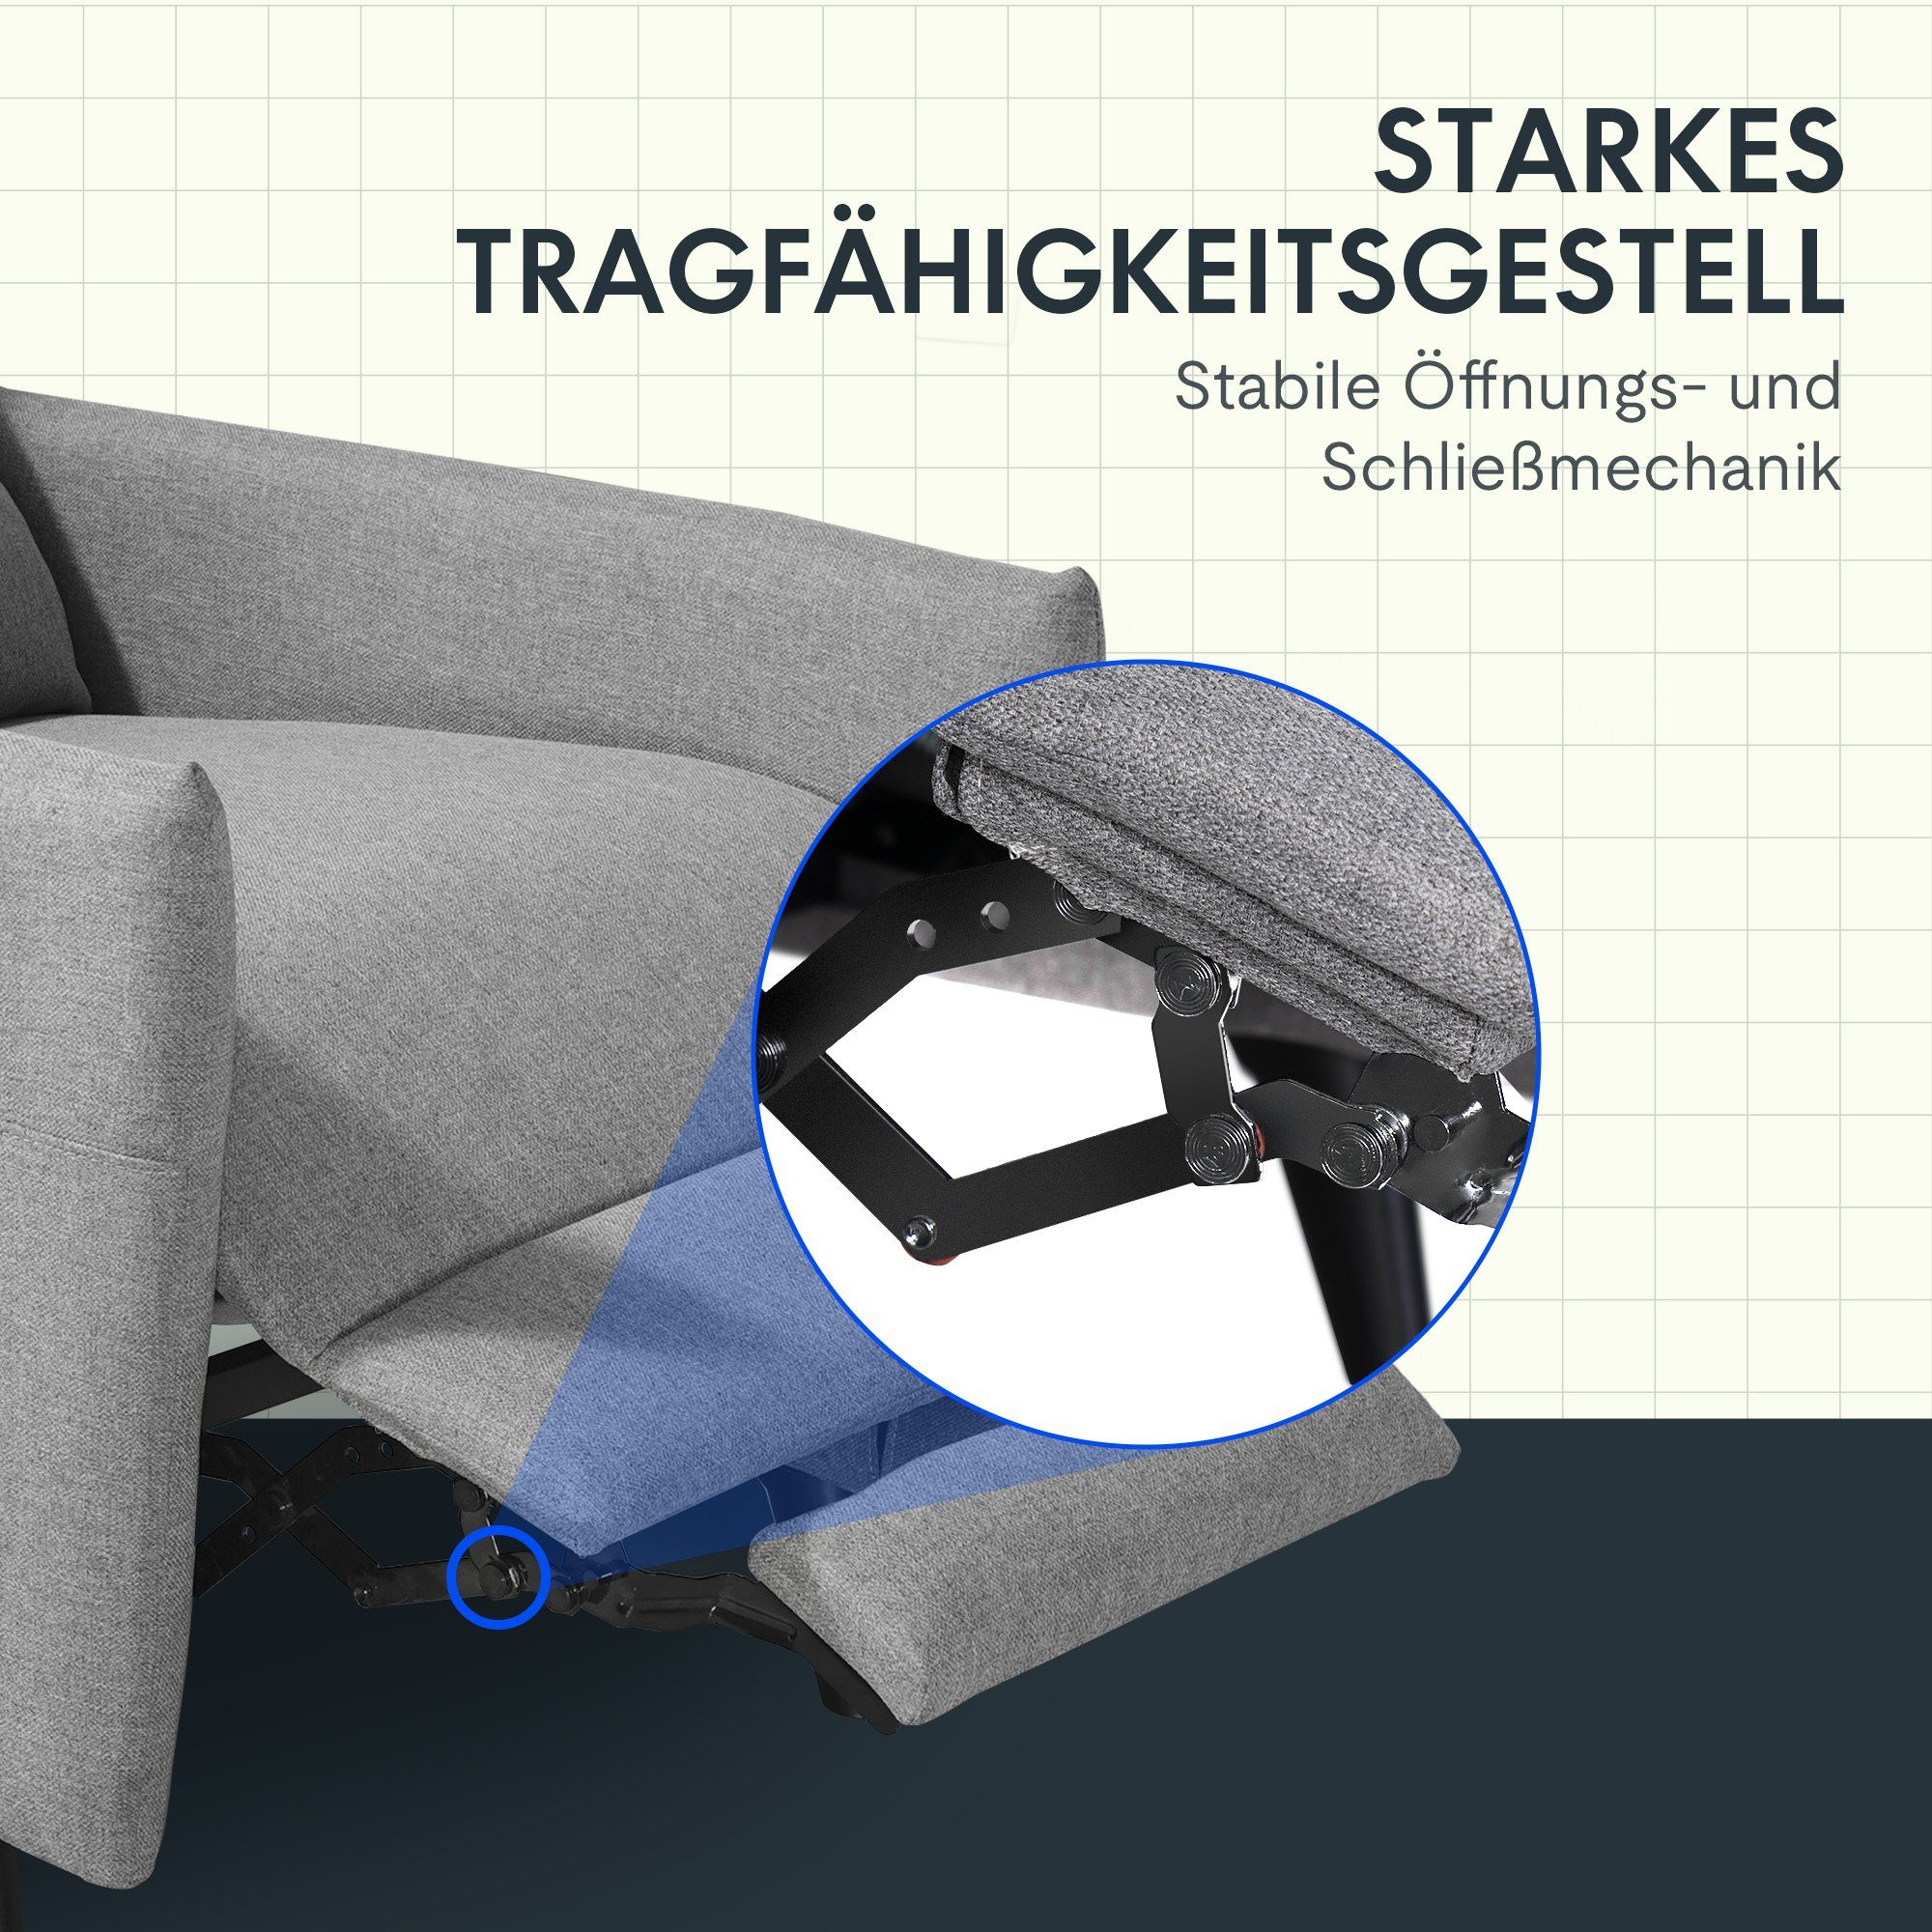 FLEXISPOT Sessel Stoff 125°-165° gepolsterte XC1 verstellbar Perfektes Flexibel (Weich für Rückenlehne, Komfort), Design Fernsehsessel Hellgrau